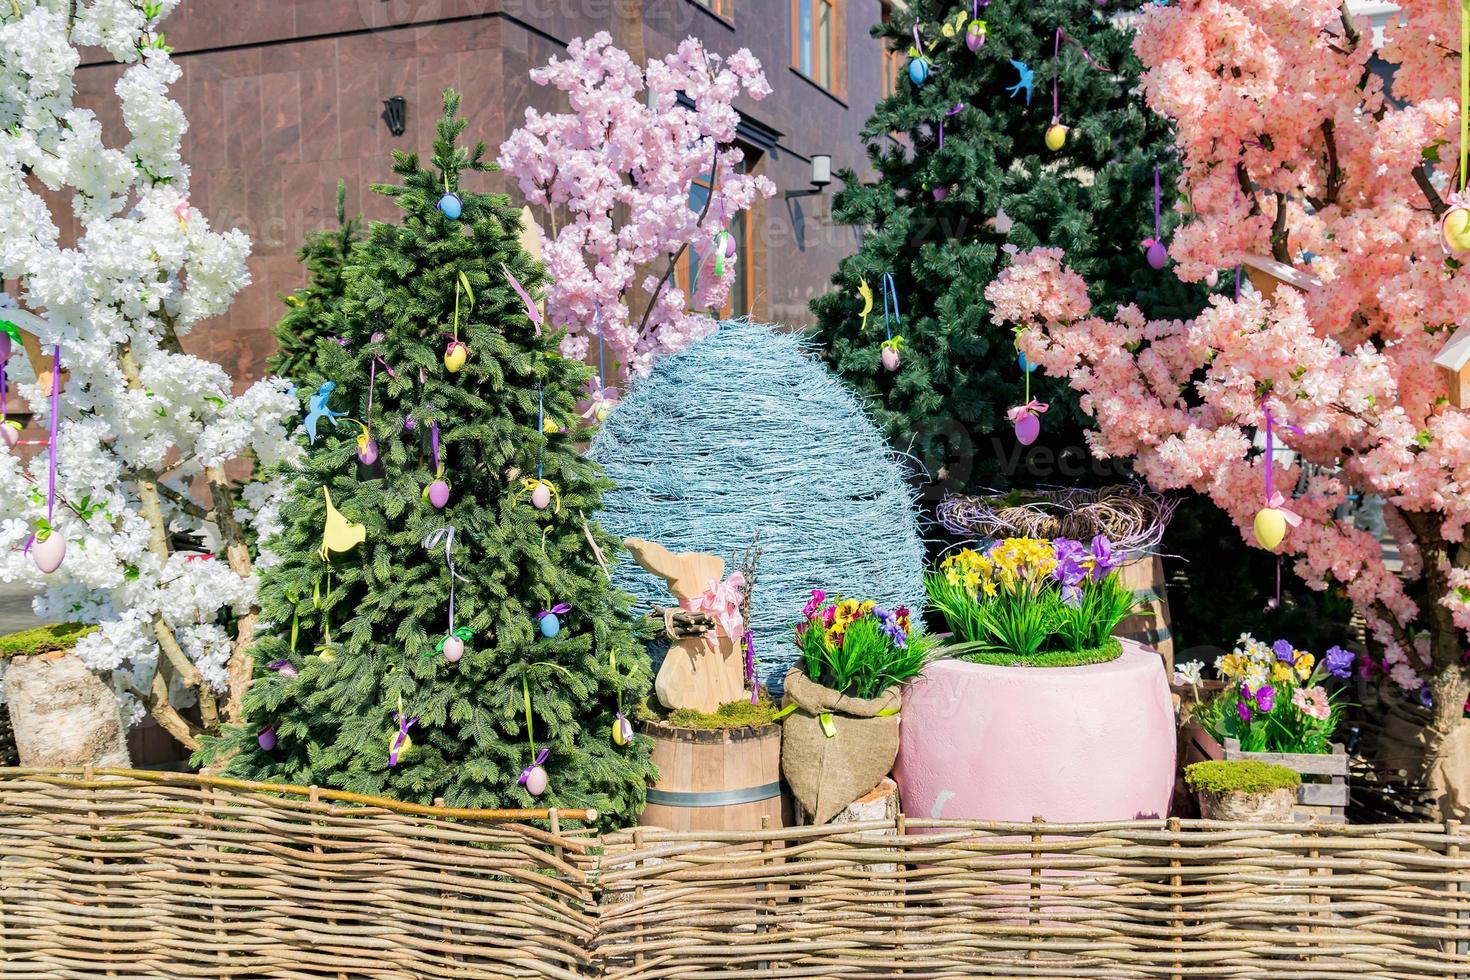 décorations de rue pour les vacances de Pâques - œufs, lapins, arbres en fleurs et clôture en osier photo